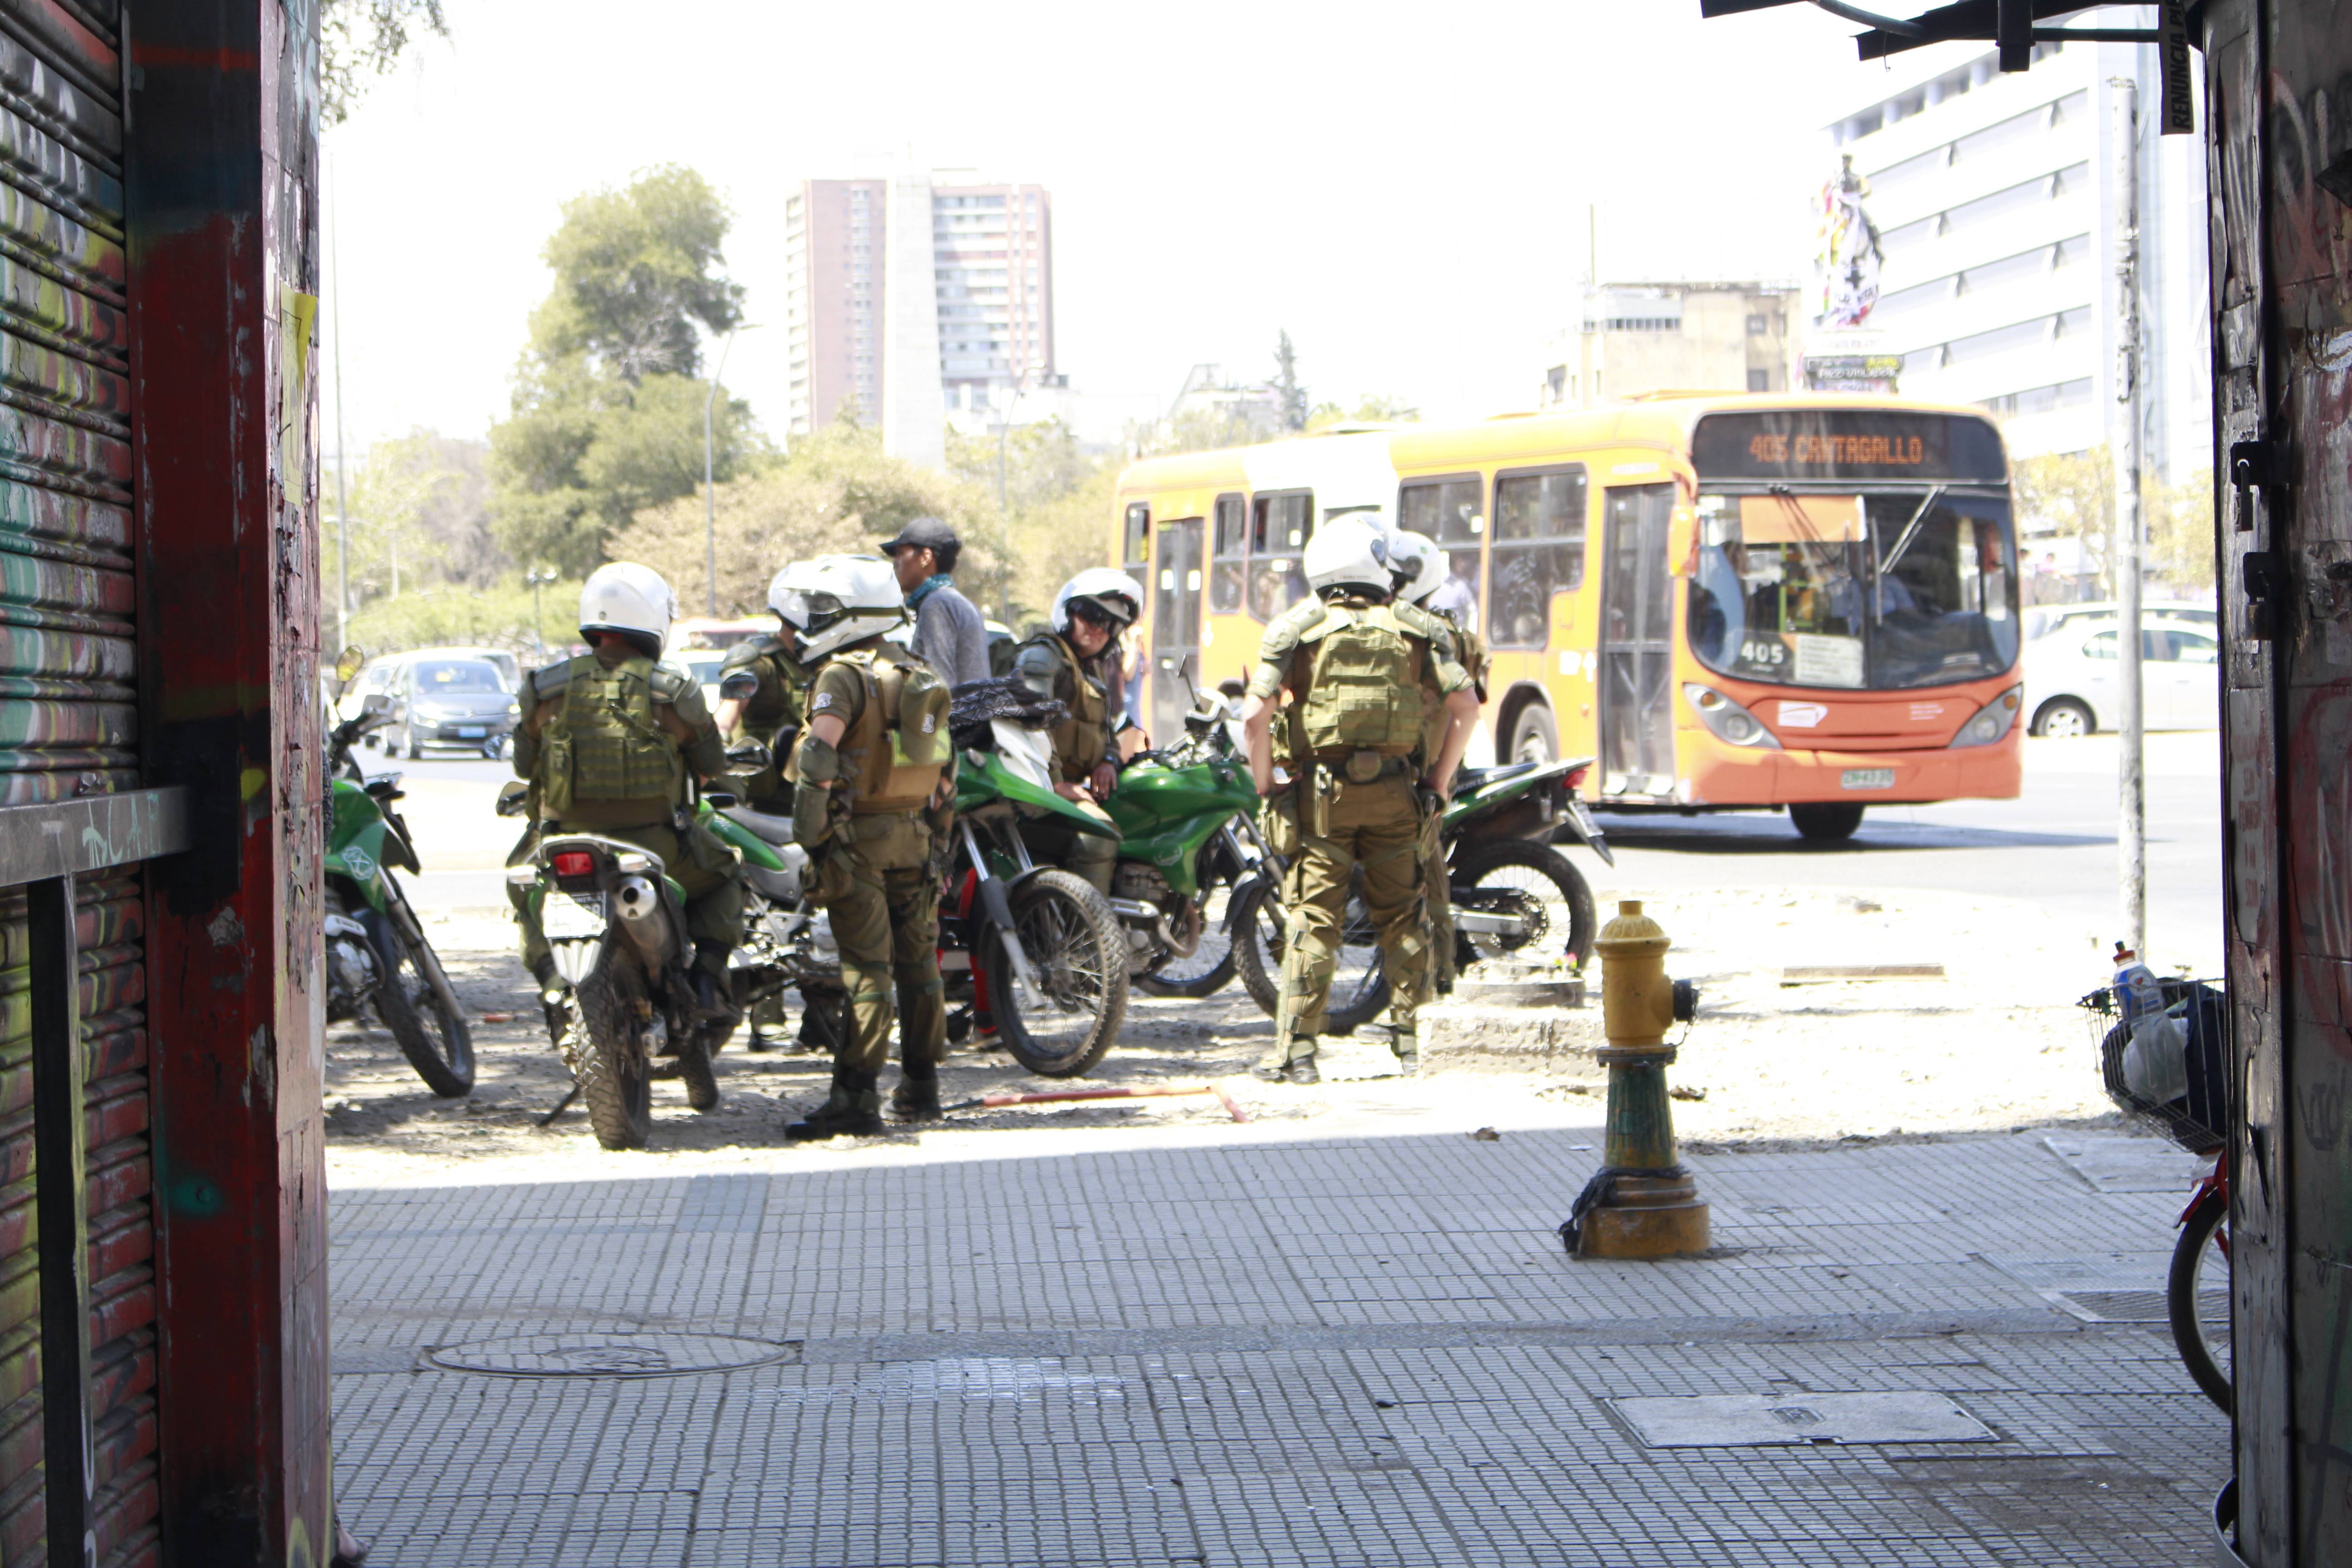 Un grupo de alrededor de 20 carabineros en moto dan vueltas por el sector y se acercan a algunos jóvenes que se tapan el rostro, sentados junto a la estatua del Coronel Baquedano, para pedirles sus identificaciones. Créditos foto: PAUTA